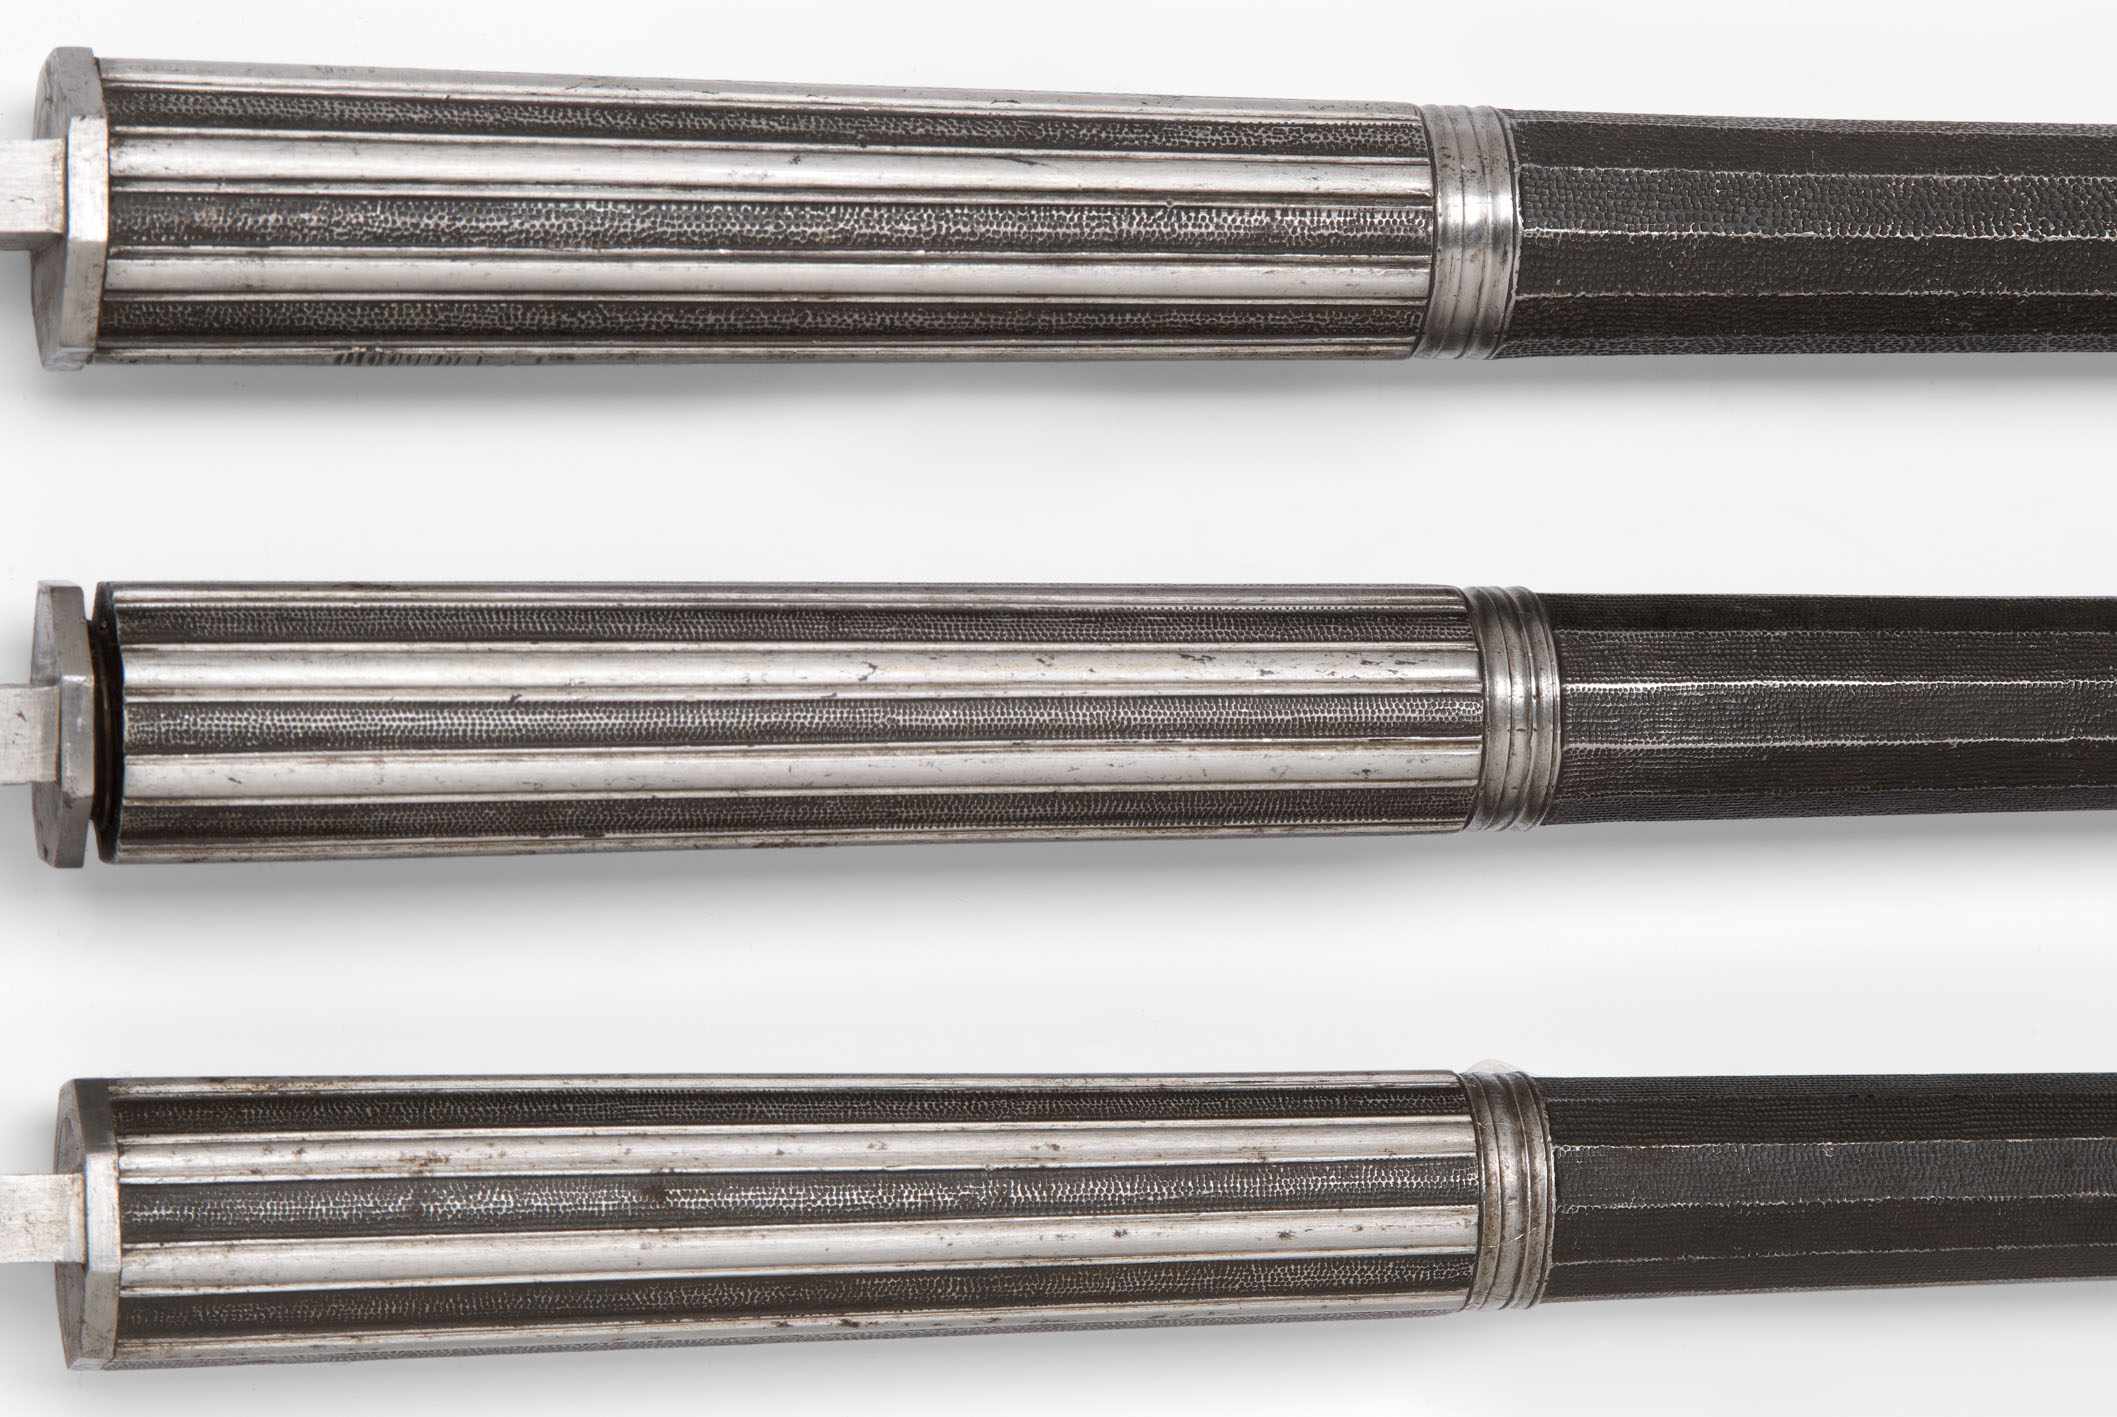 Drei gleiche Pistolenläufe Spanien, Anf. 18.Jh. Stahl. Zwölfkantiger prismischer Säulenlauf mit - Bild 2 aus 2